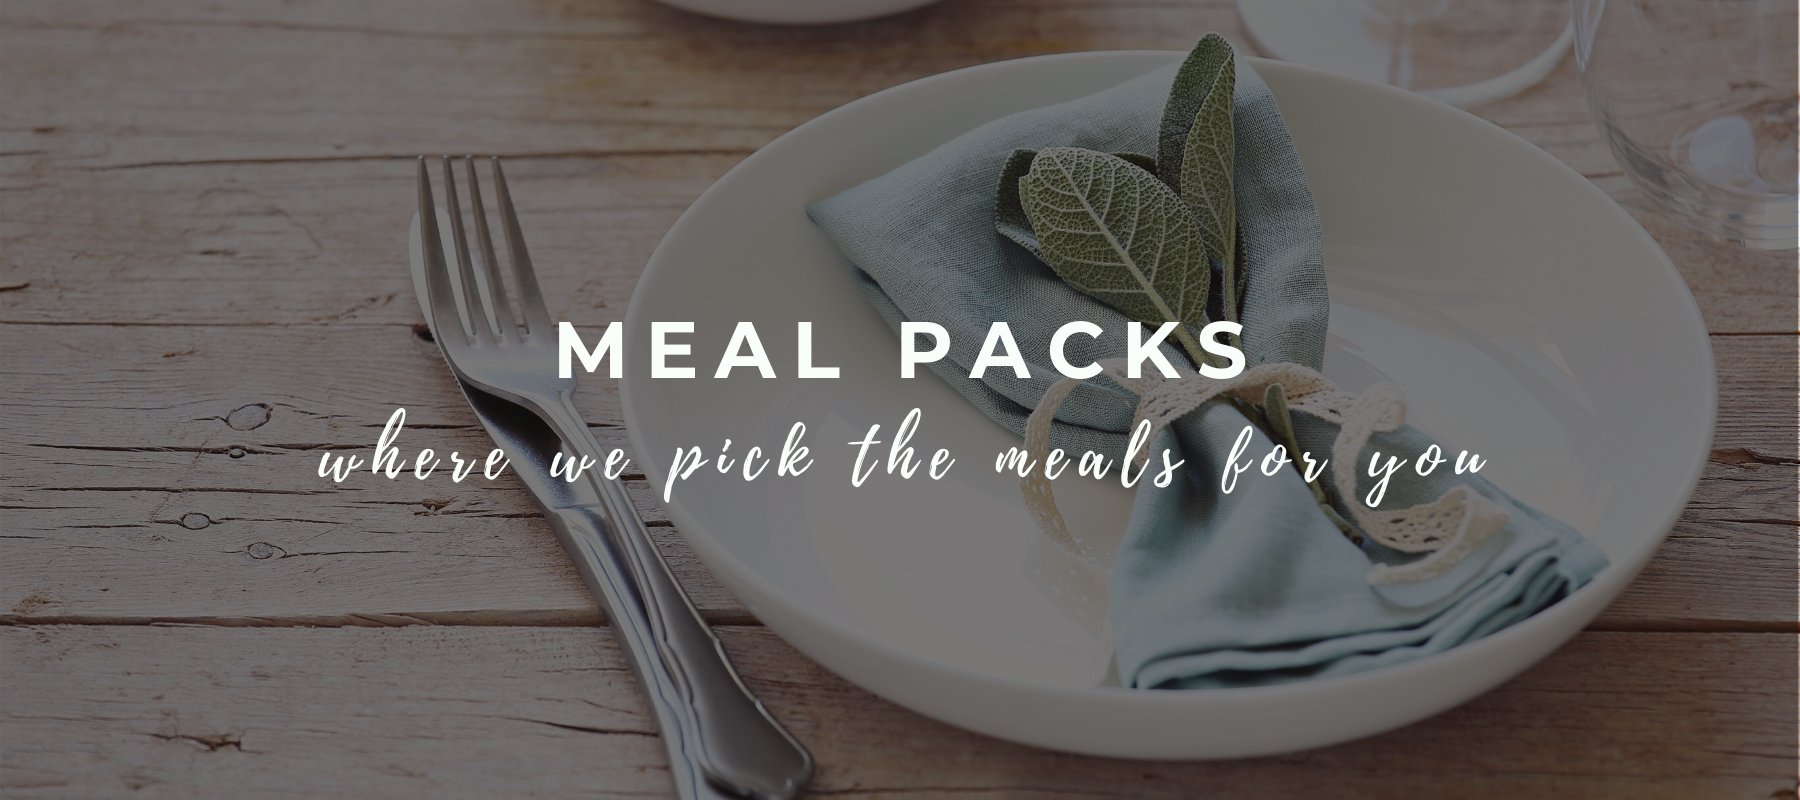 Meal Packs - FoodSt